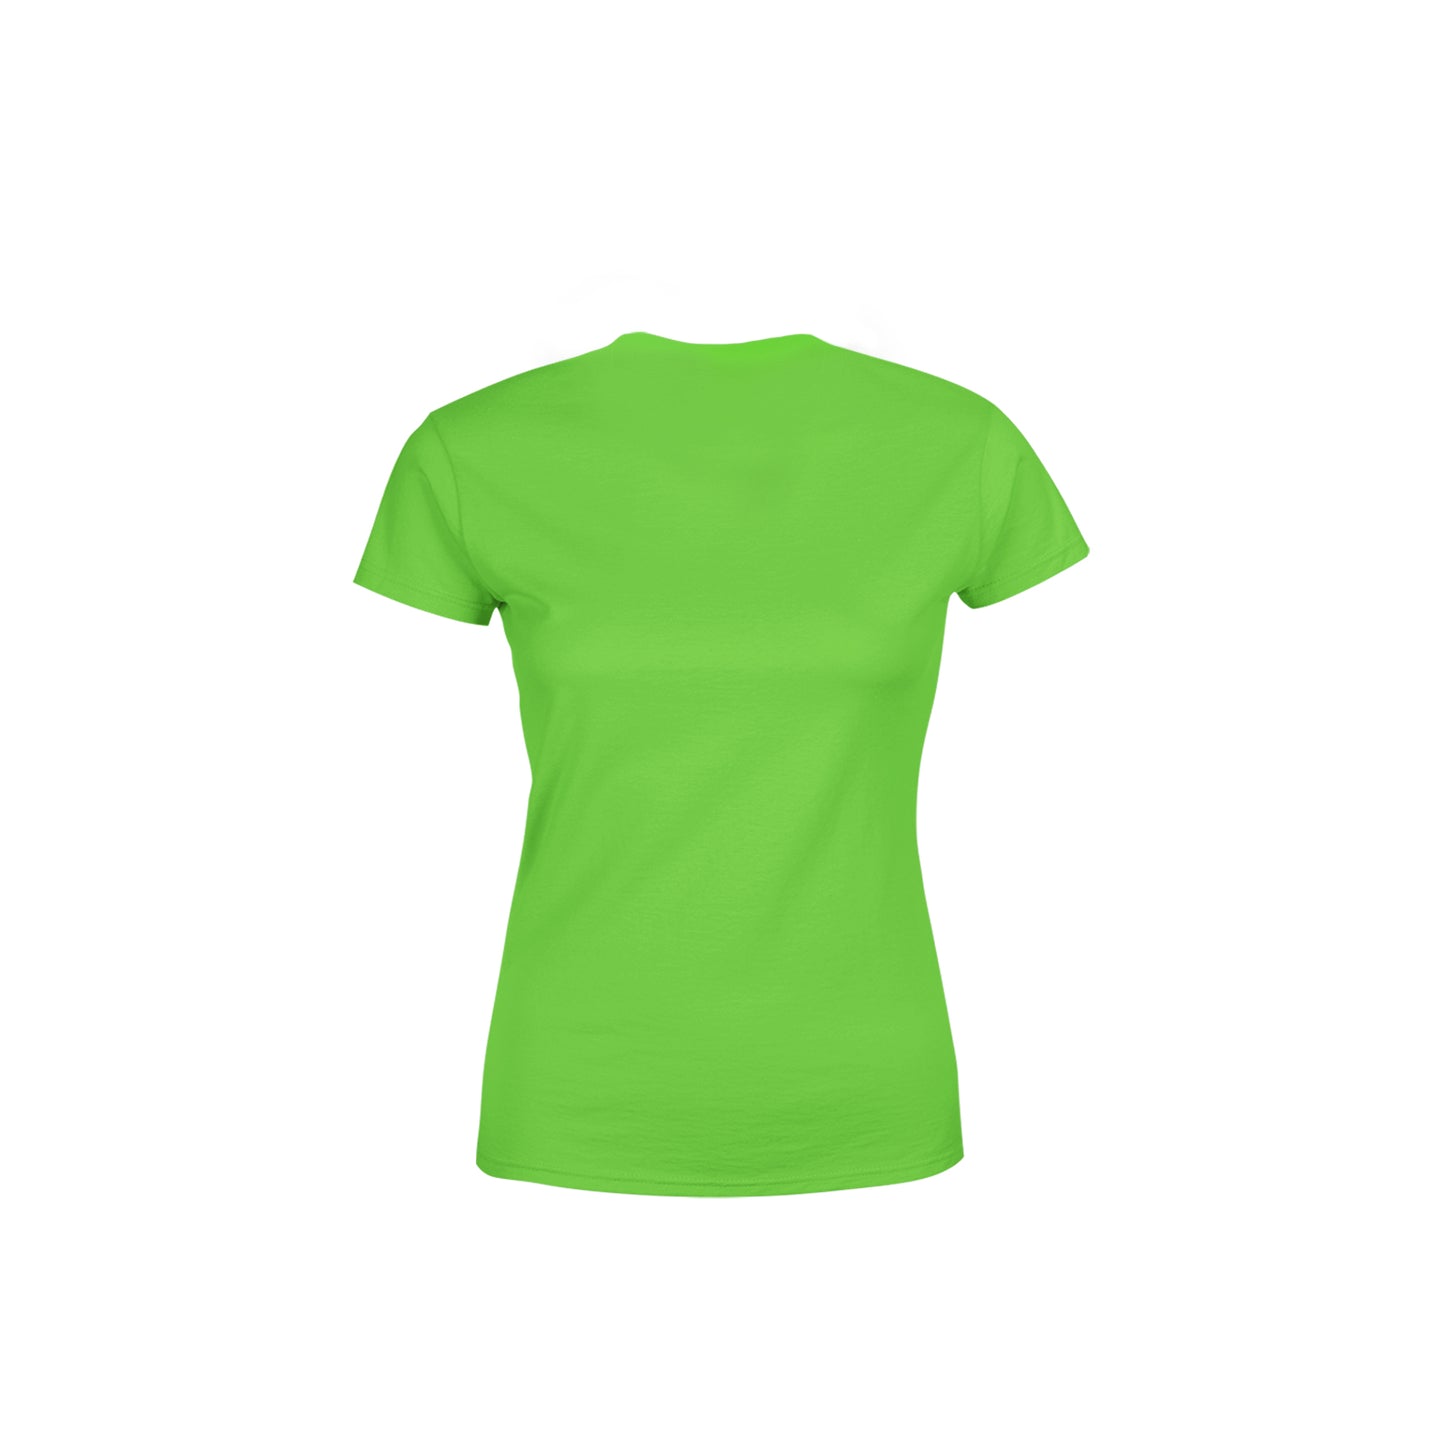 09 Number Women's T-Shirt (Liril Green)